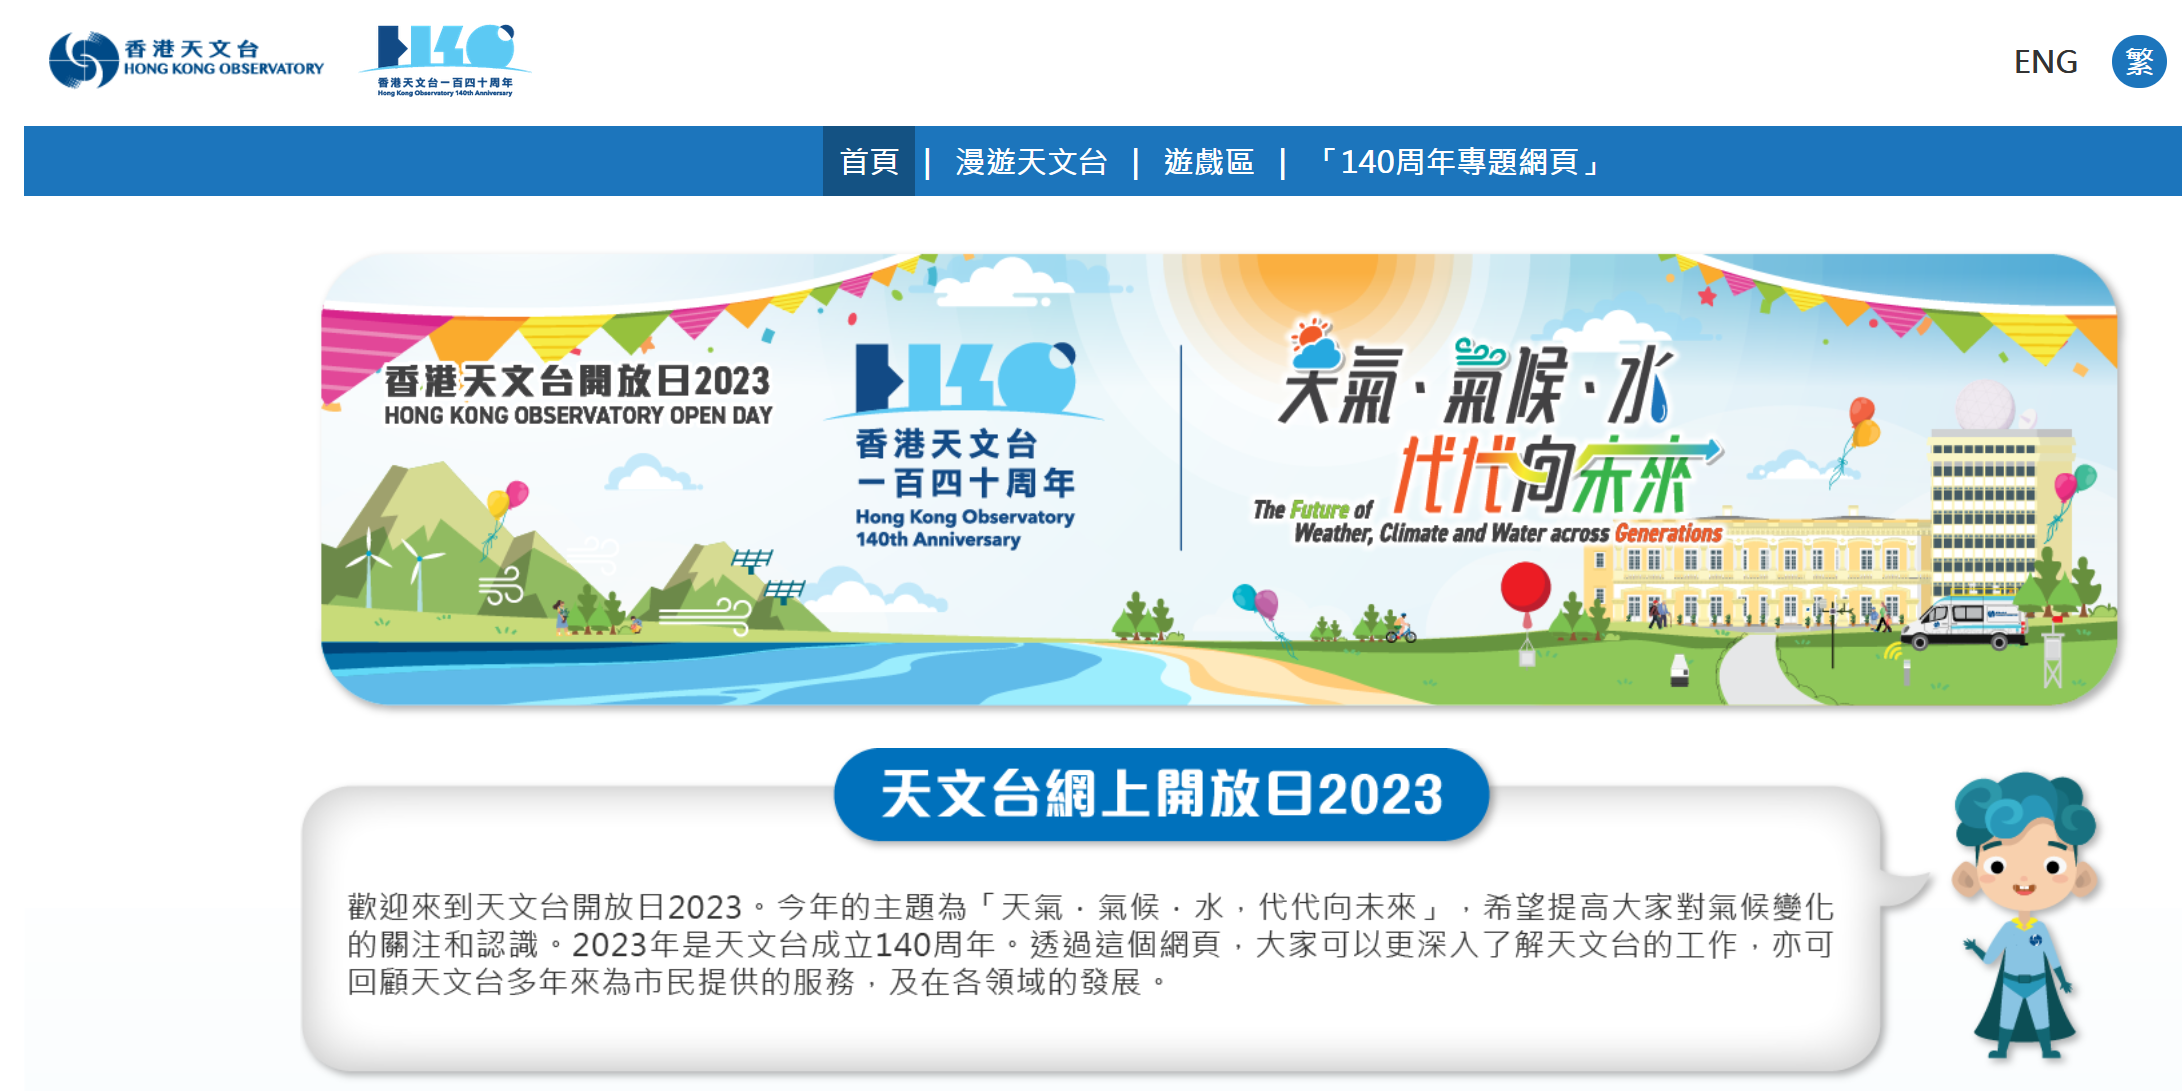 「香港天文台開放日2023」網頁